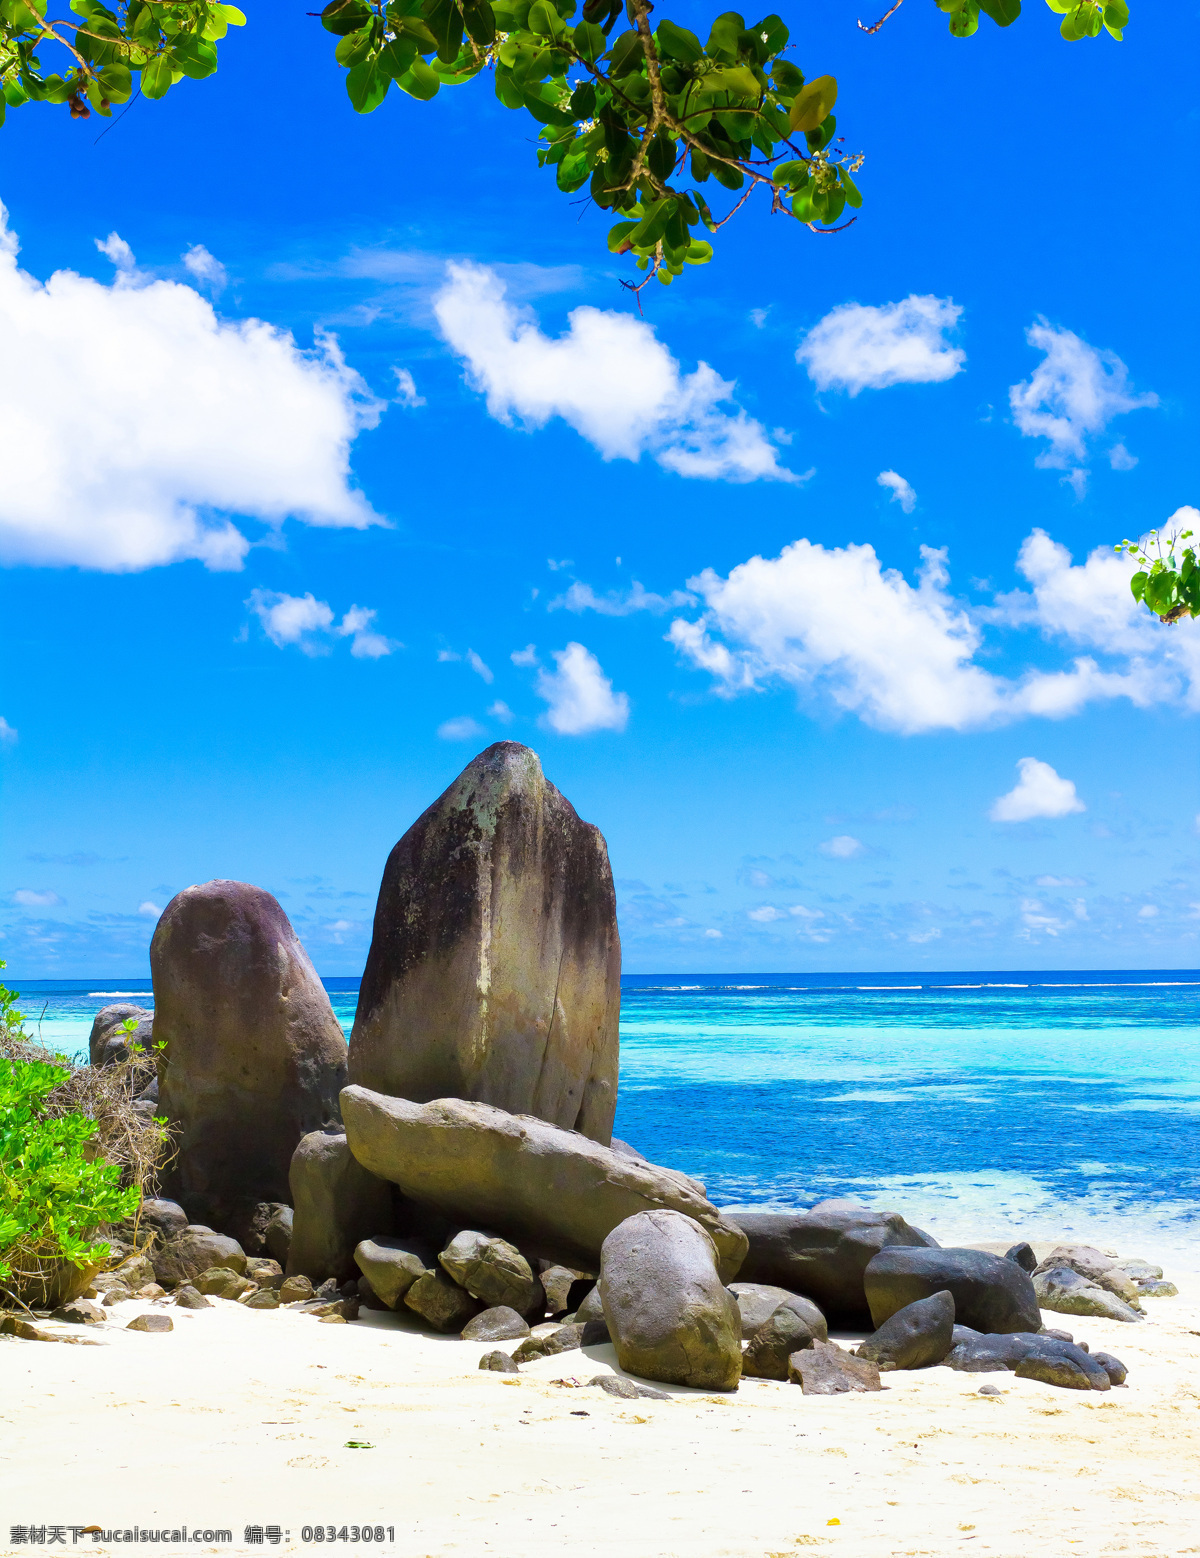 海边 自然 美景 大海 海水 海浪 石头 蓝天 白云 树 绿叶 自然美景 山水风景 风景图片